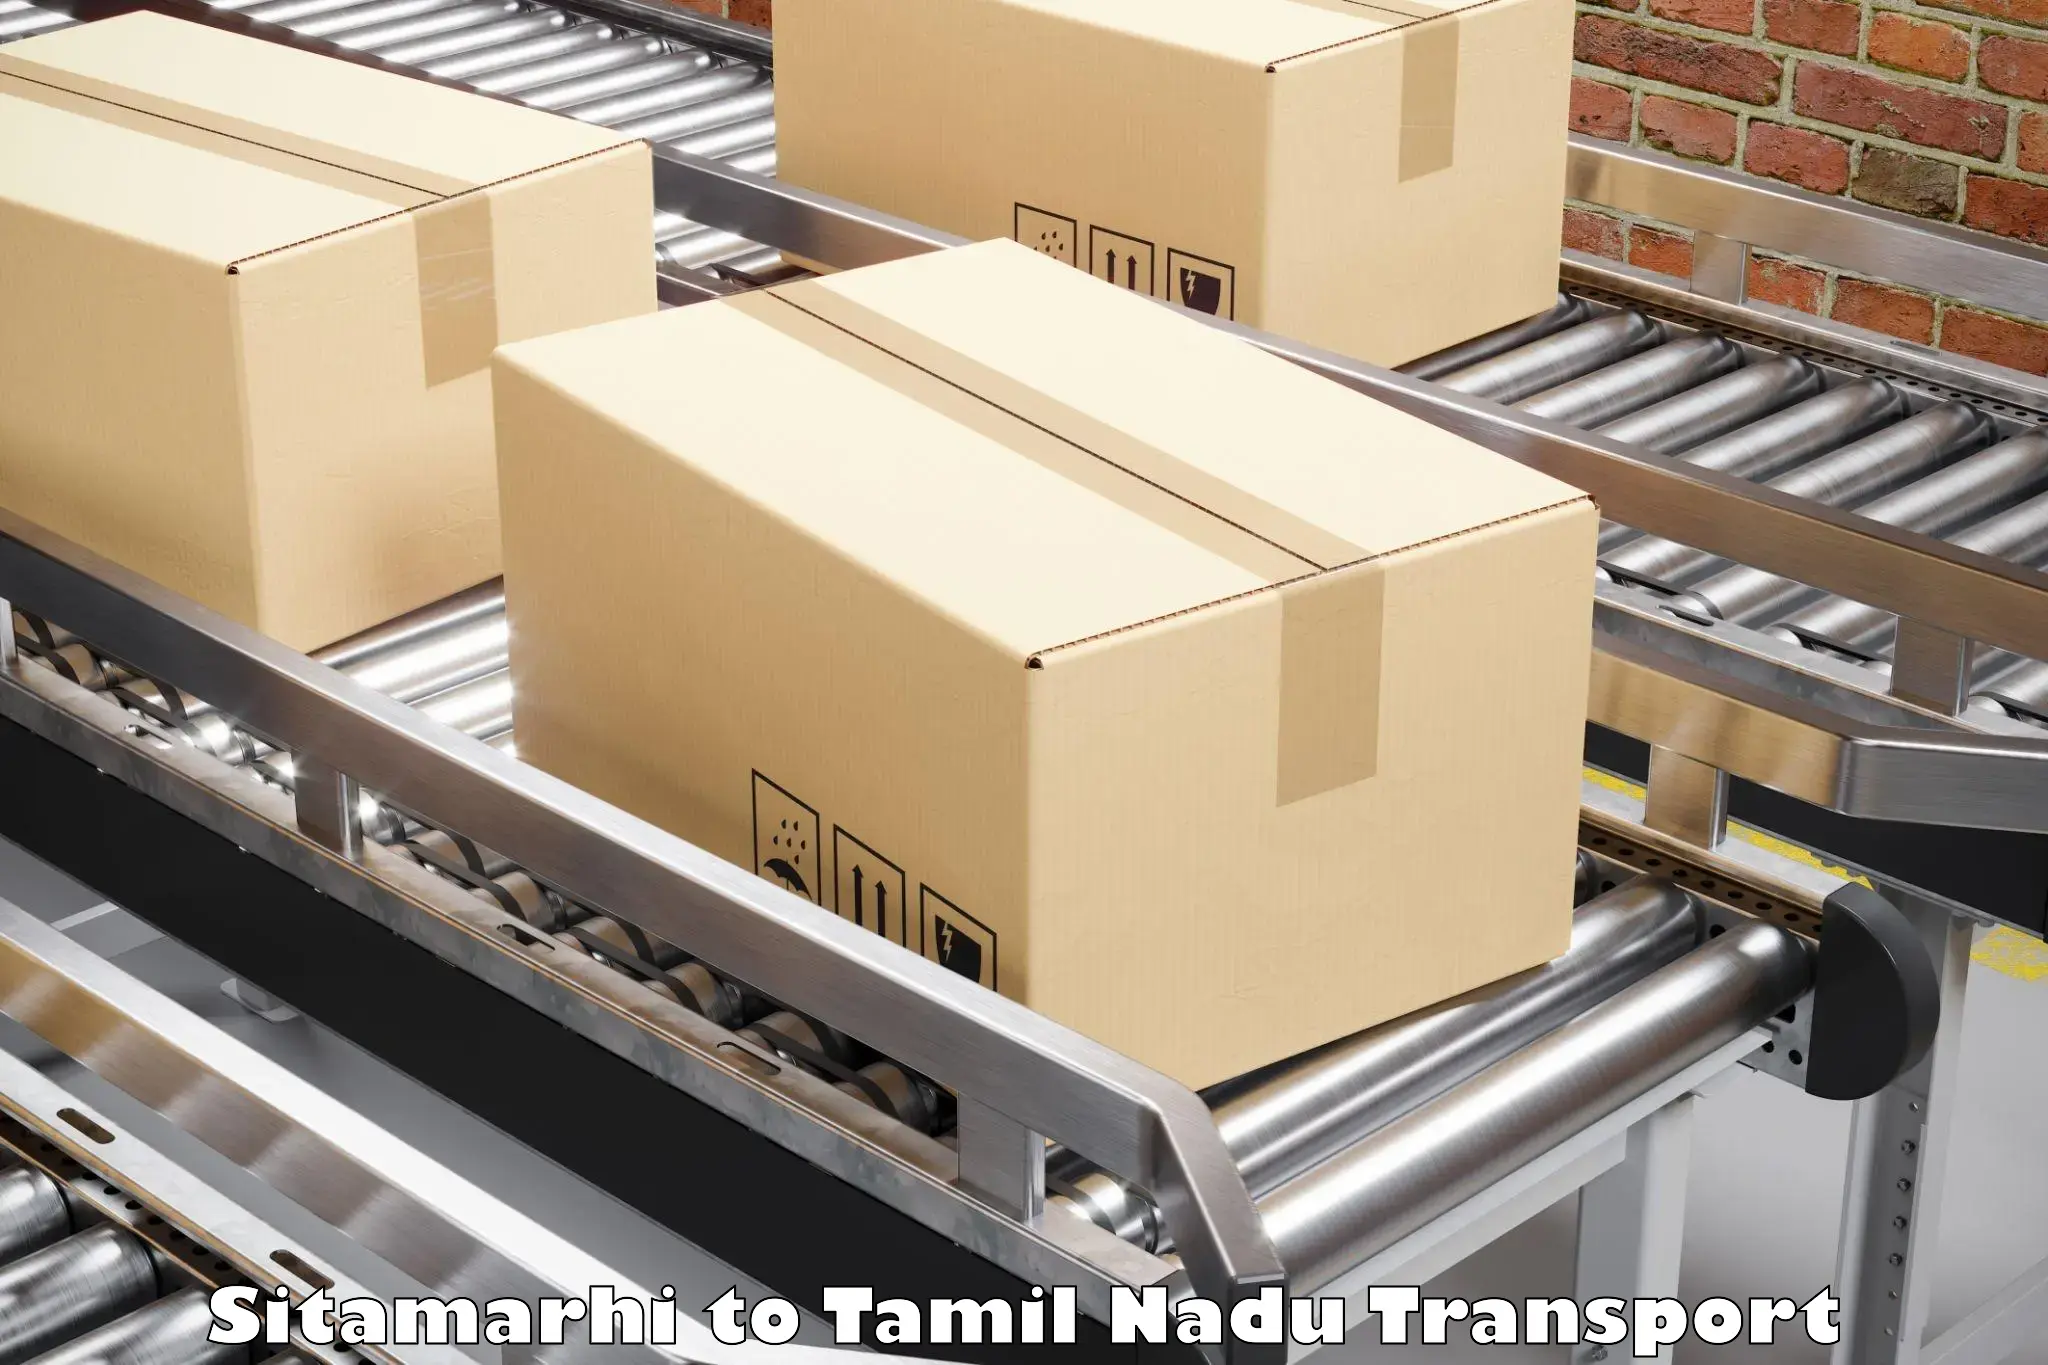 Road transport online services Sitamarhi to Tiruturaipundi